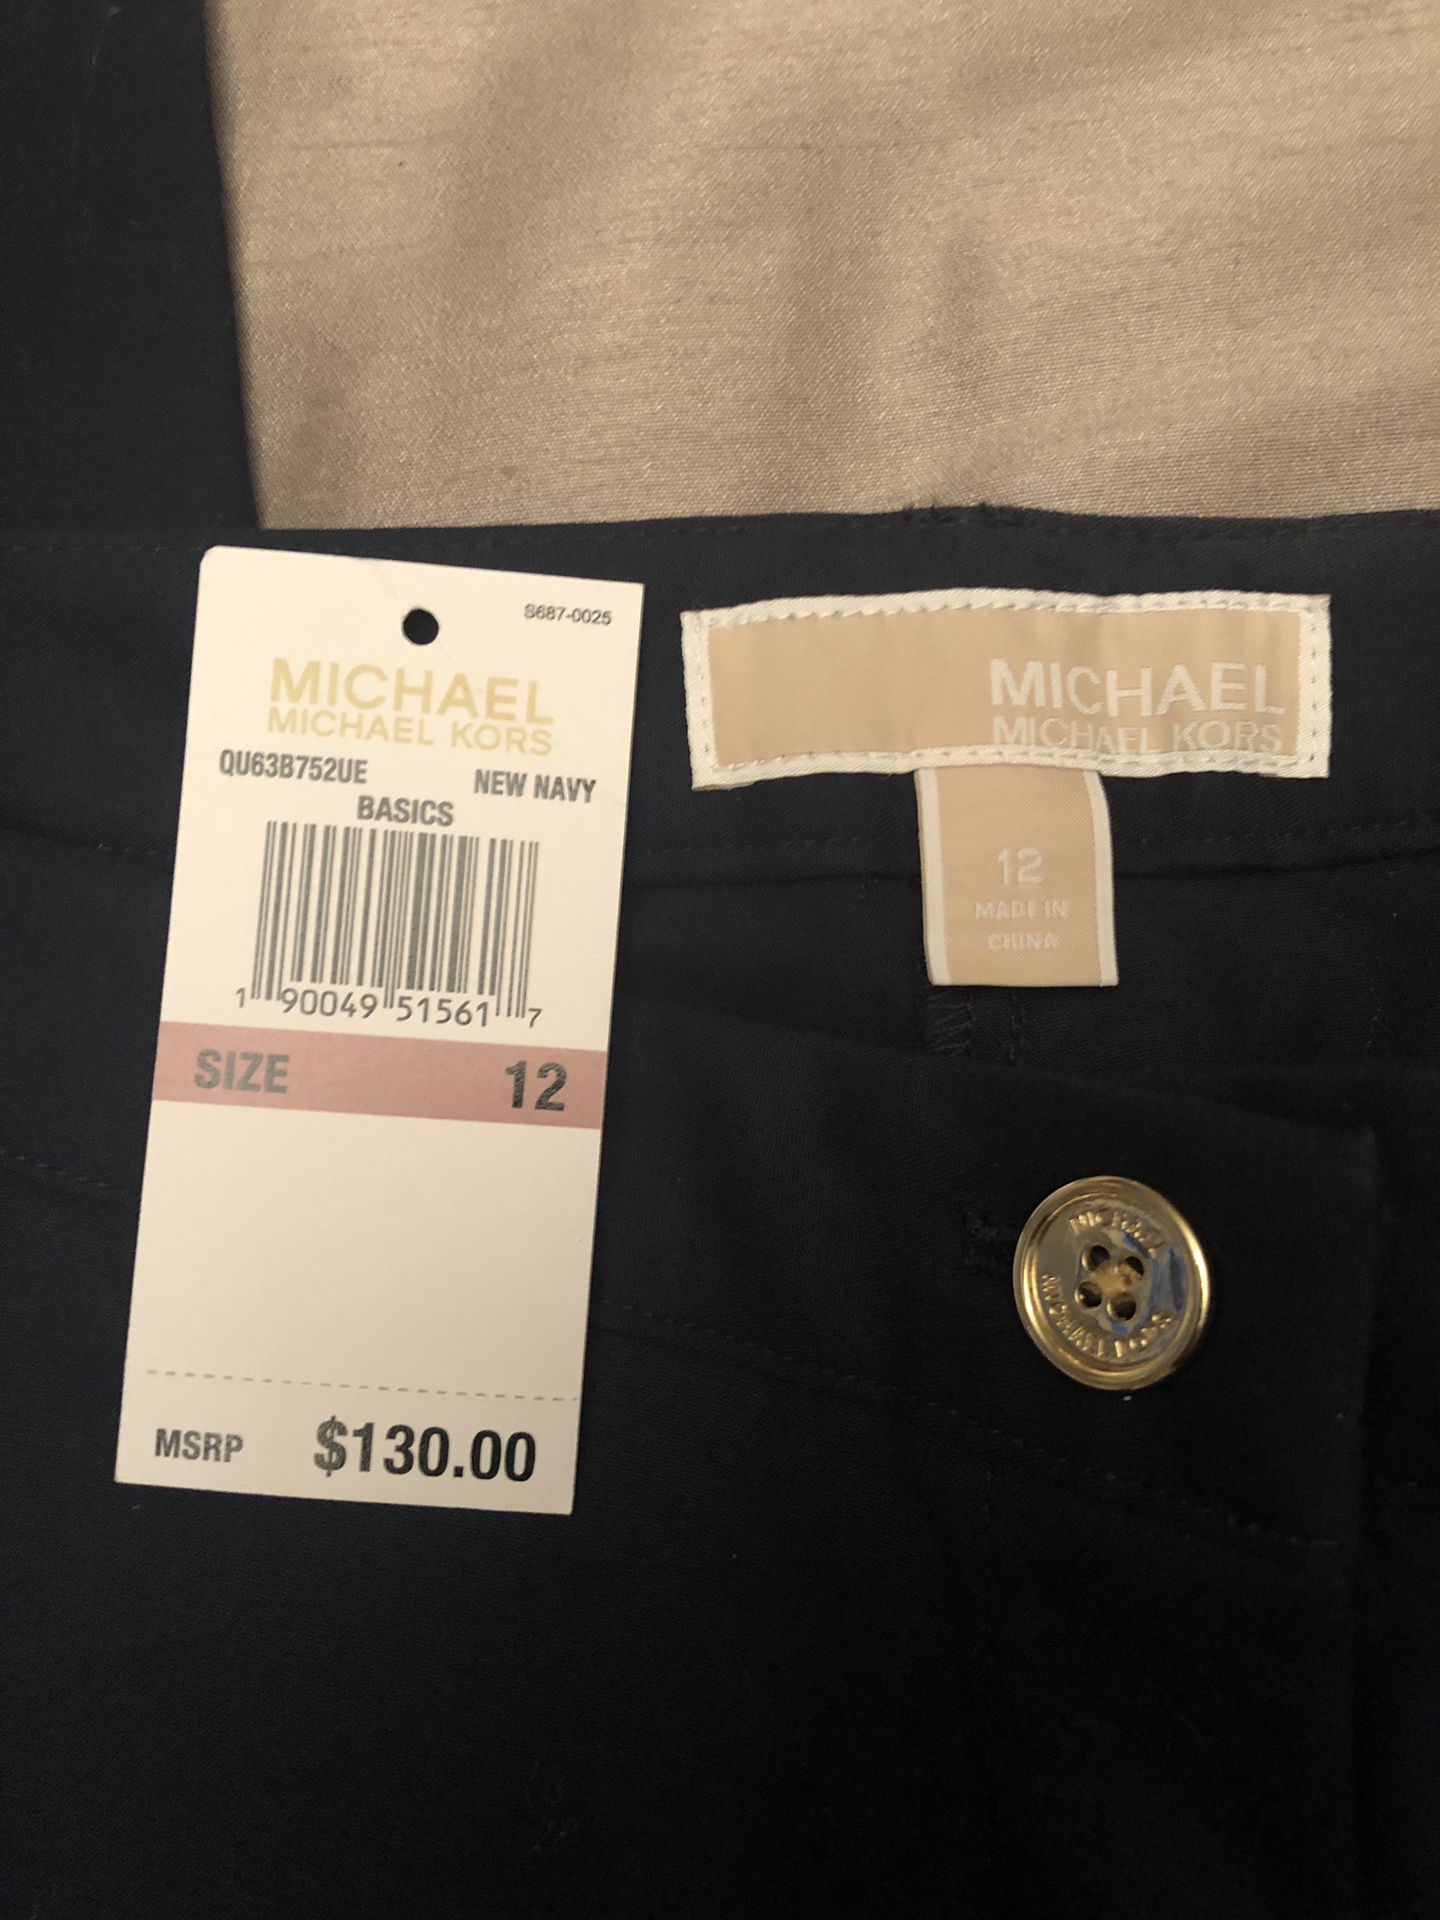 Brand new size 12 women’s Michael kors $90 or best offer